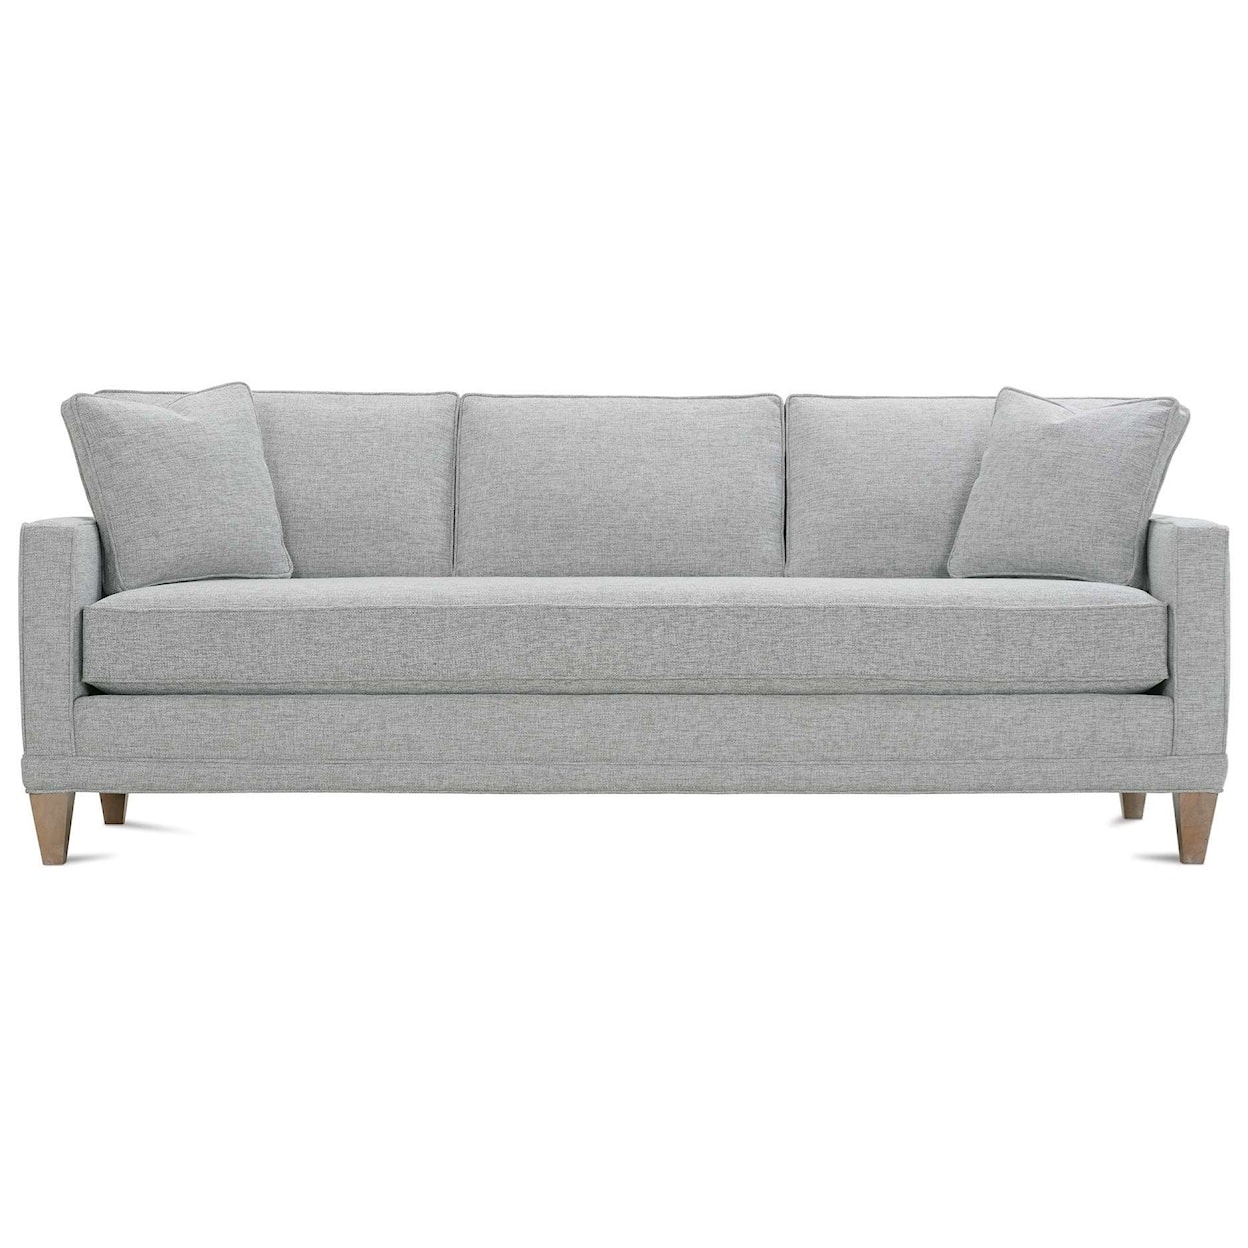 Rowe Townsend Bench Cushion Sofa